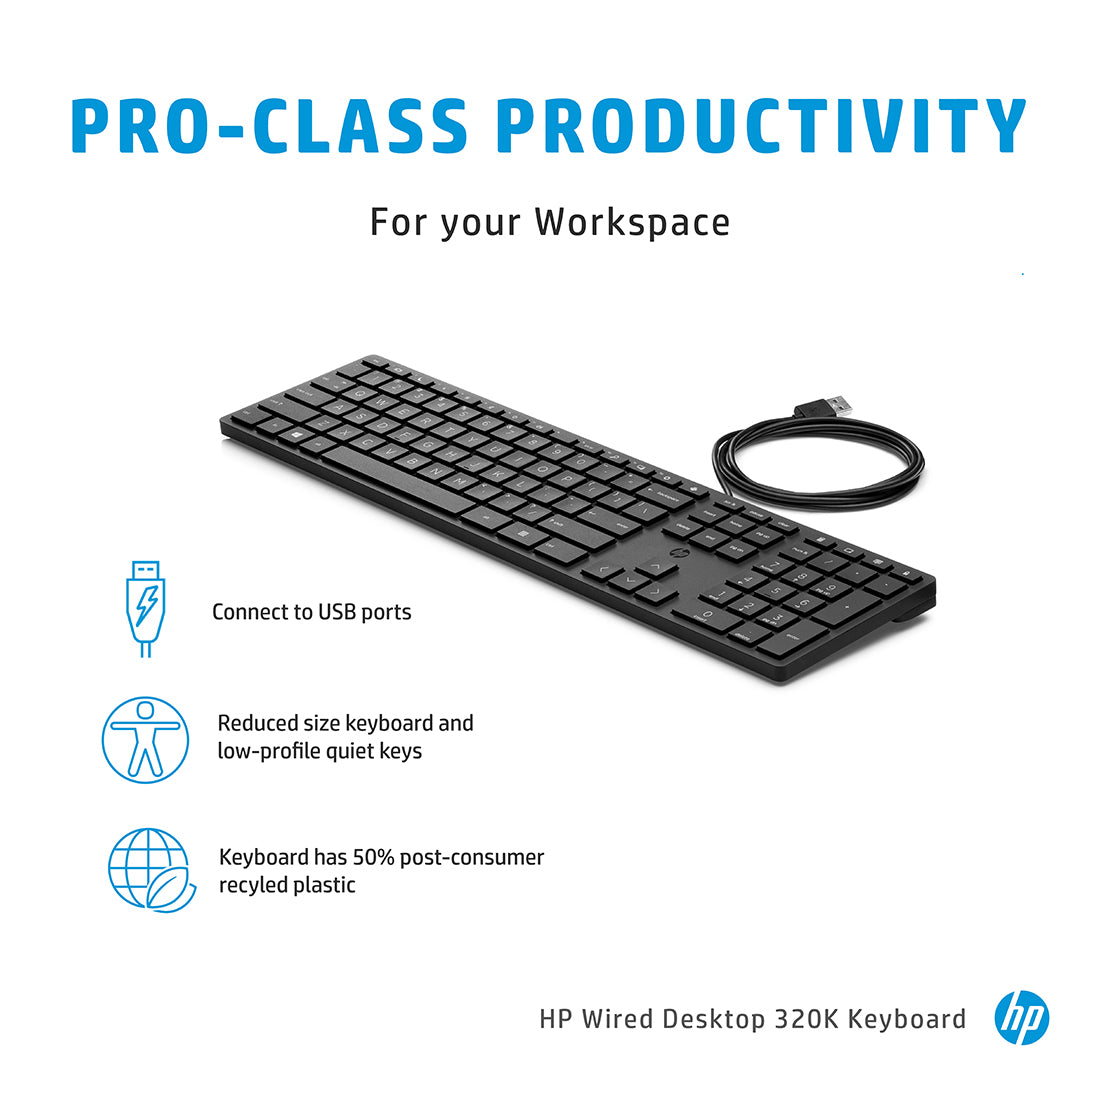 HP 320K वायर्ड डेस्कटॉप फुल-साइज़ कीबोर्ड लो-प्रोफाइल शांत कुंजियों और एडजस्टेबल ऊंचाई के साथ